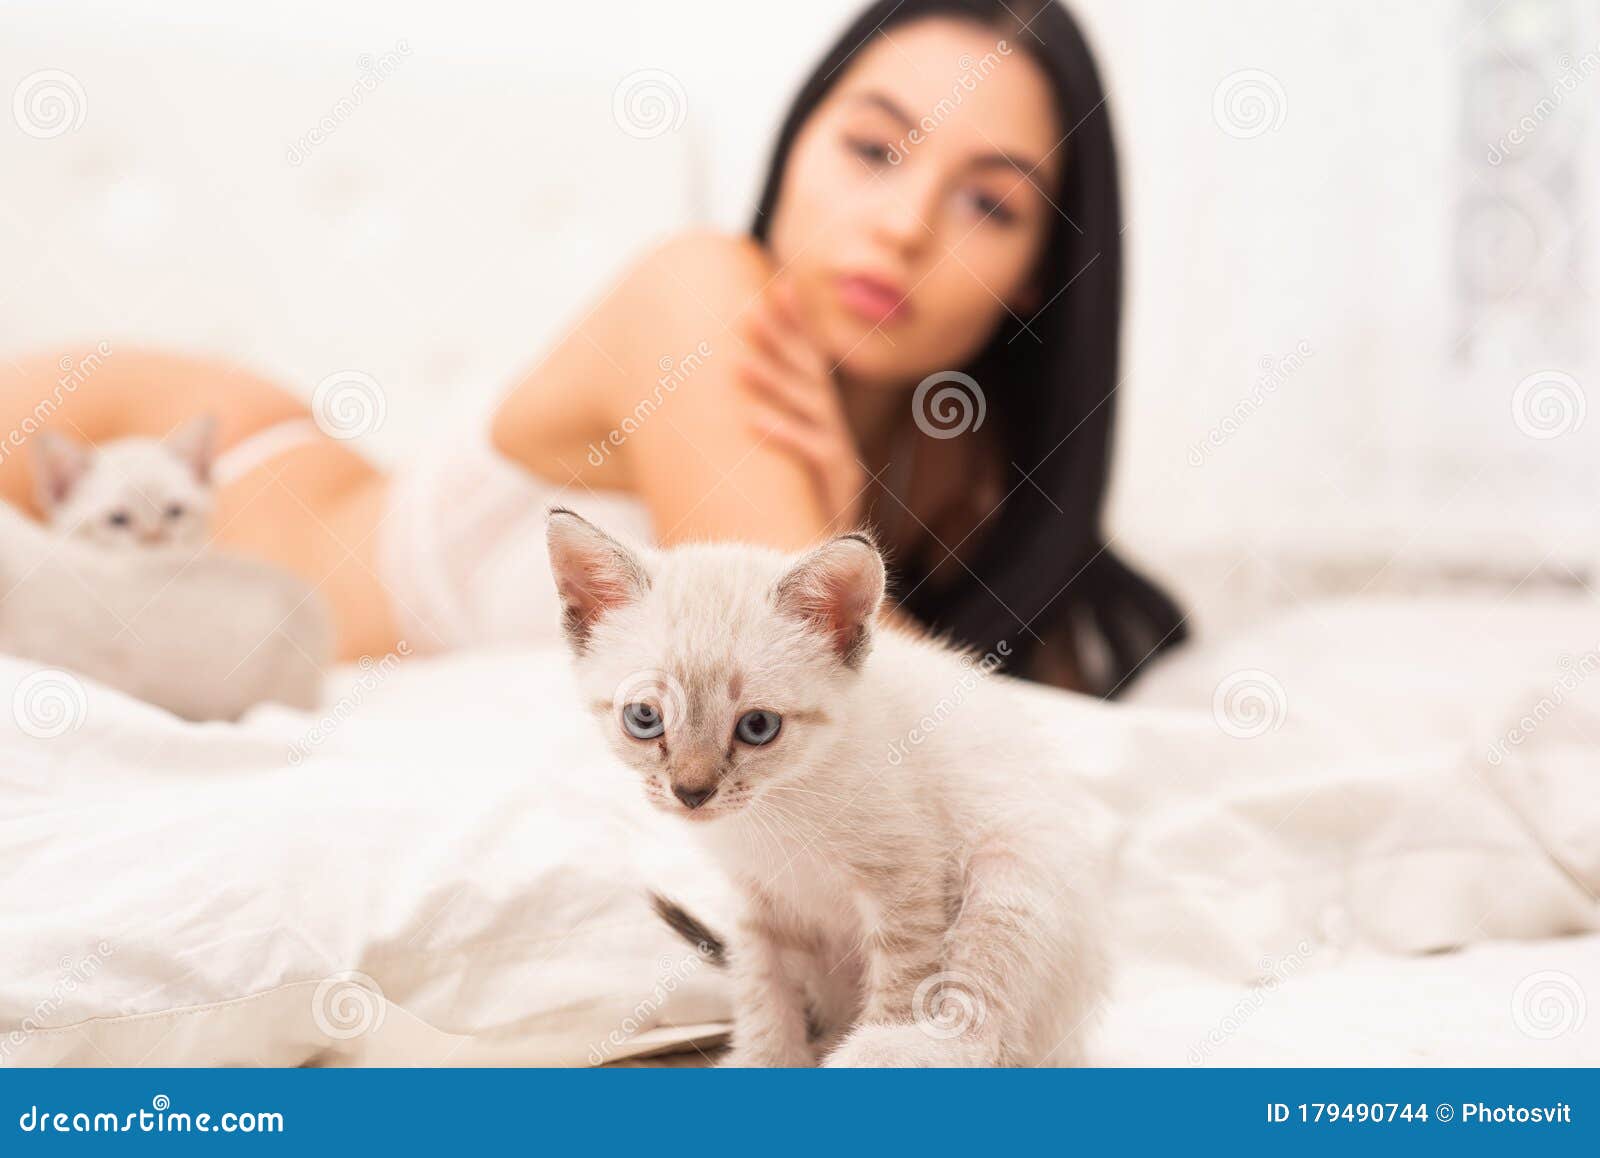 Kitten petplay